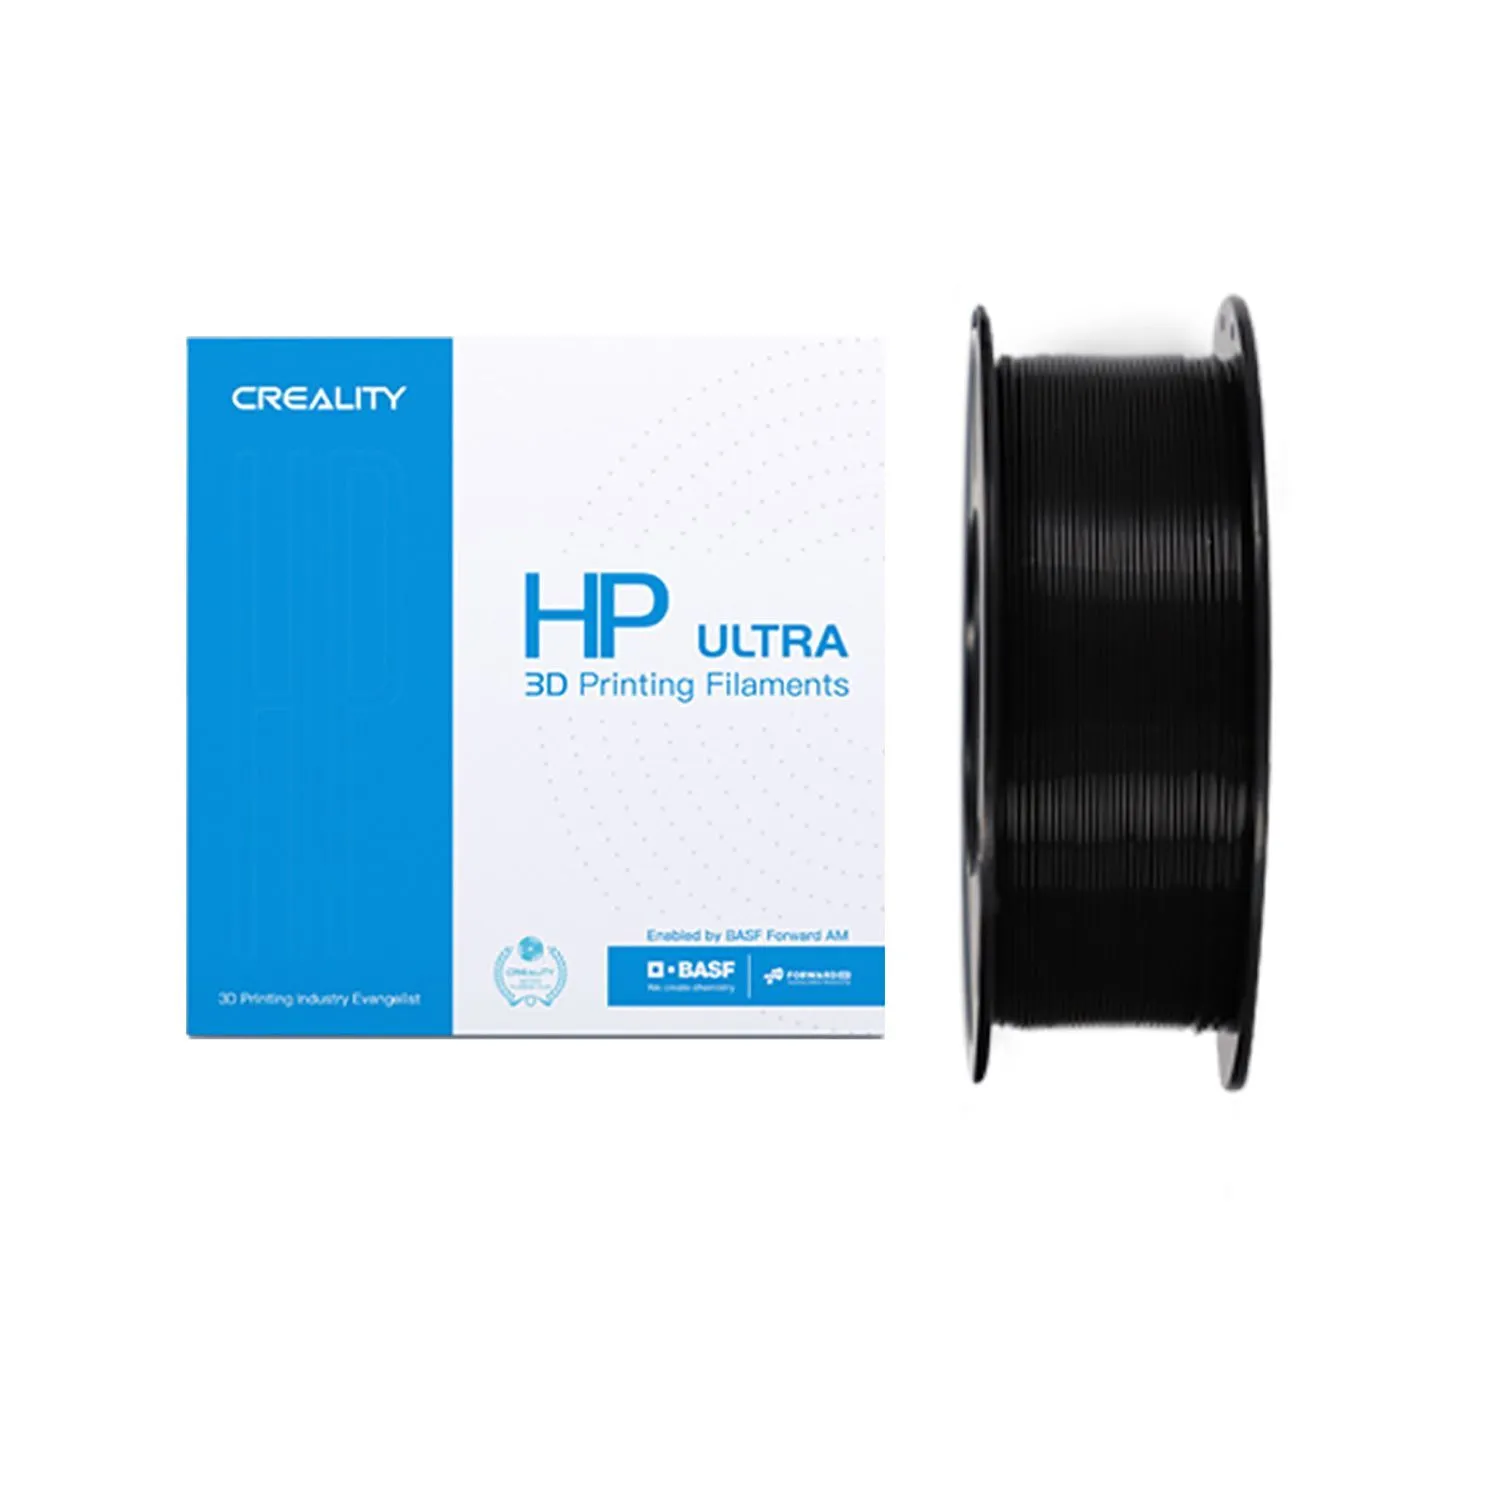 Катушка HP ULTRA PLA пластика Creality, черный 1,75 мм 1кг для 3D принтеров [3301010276]